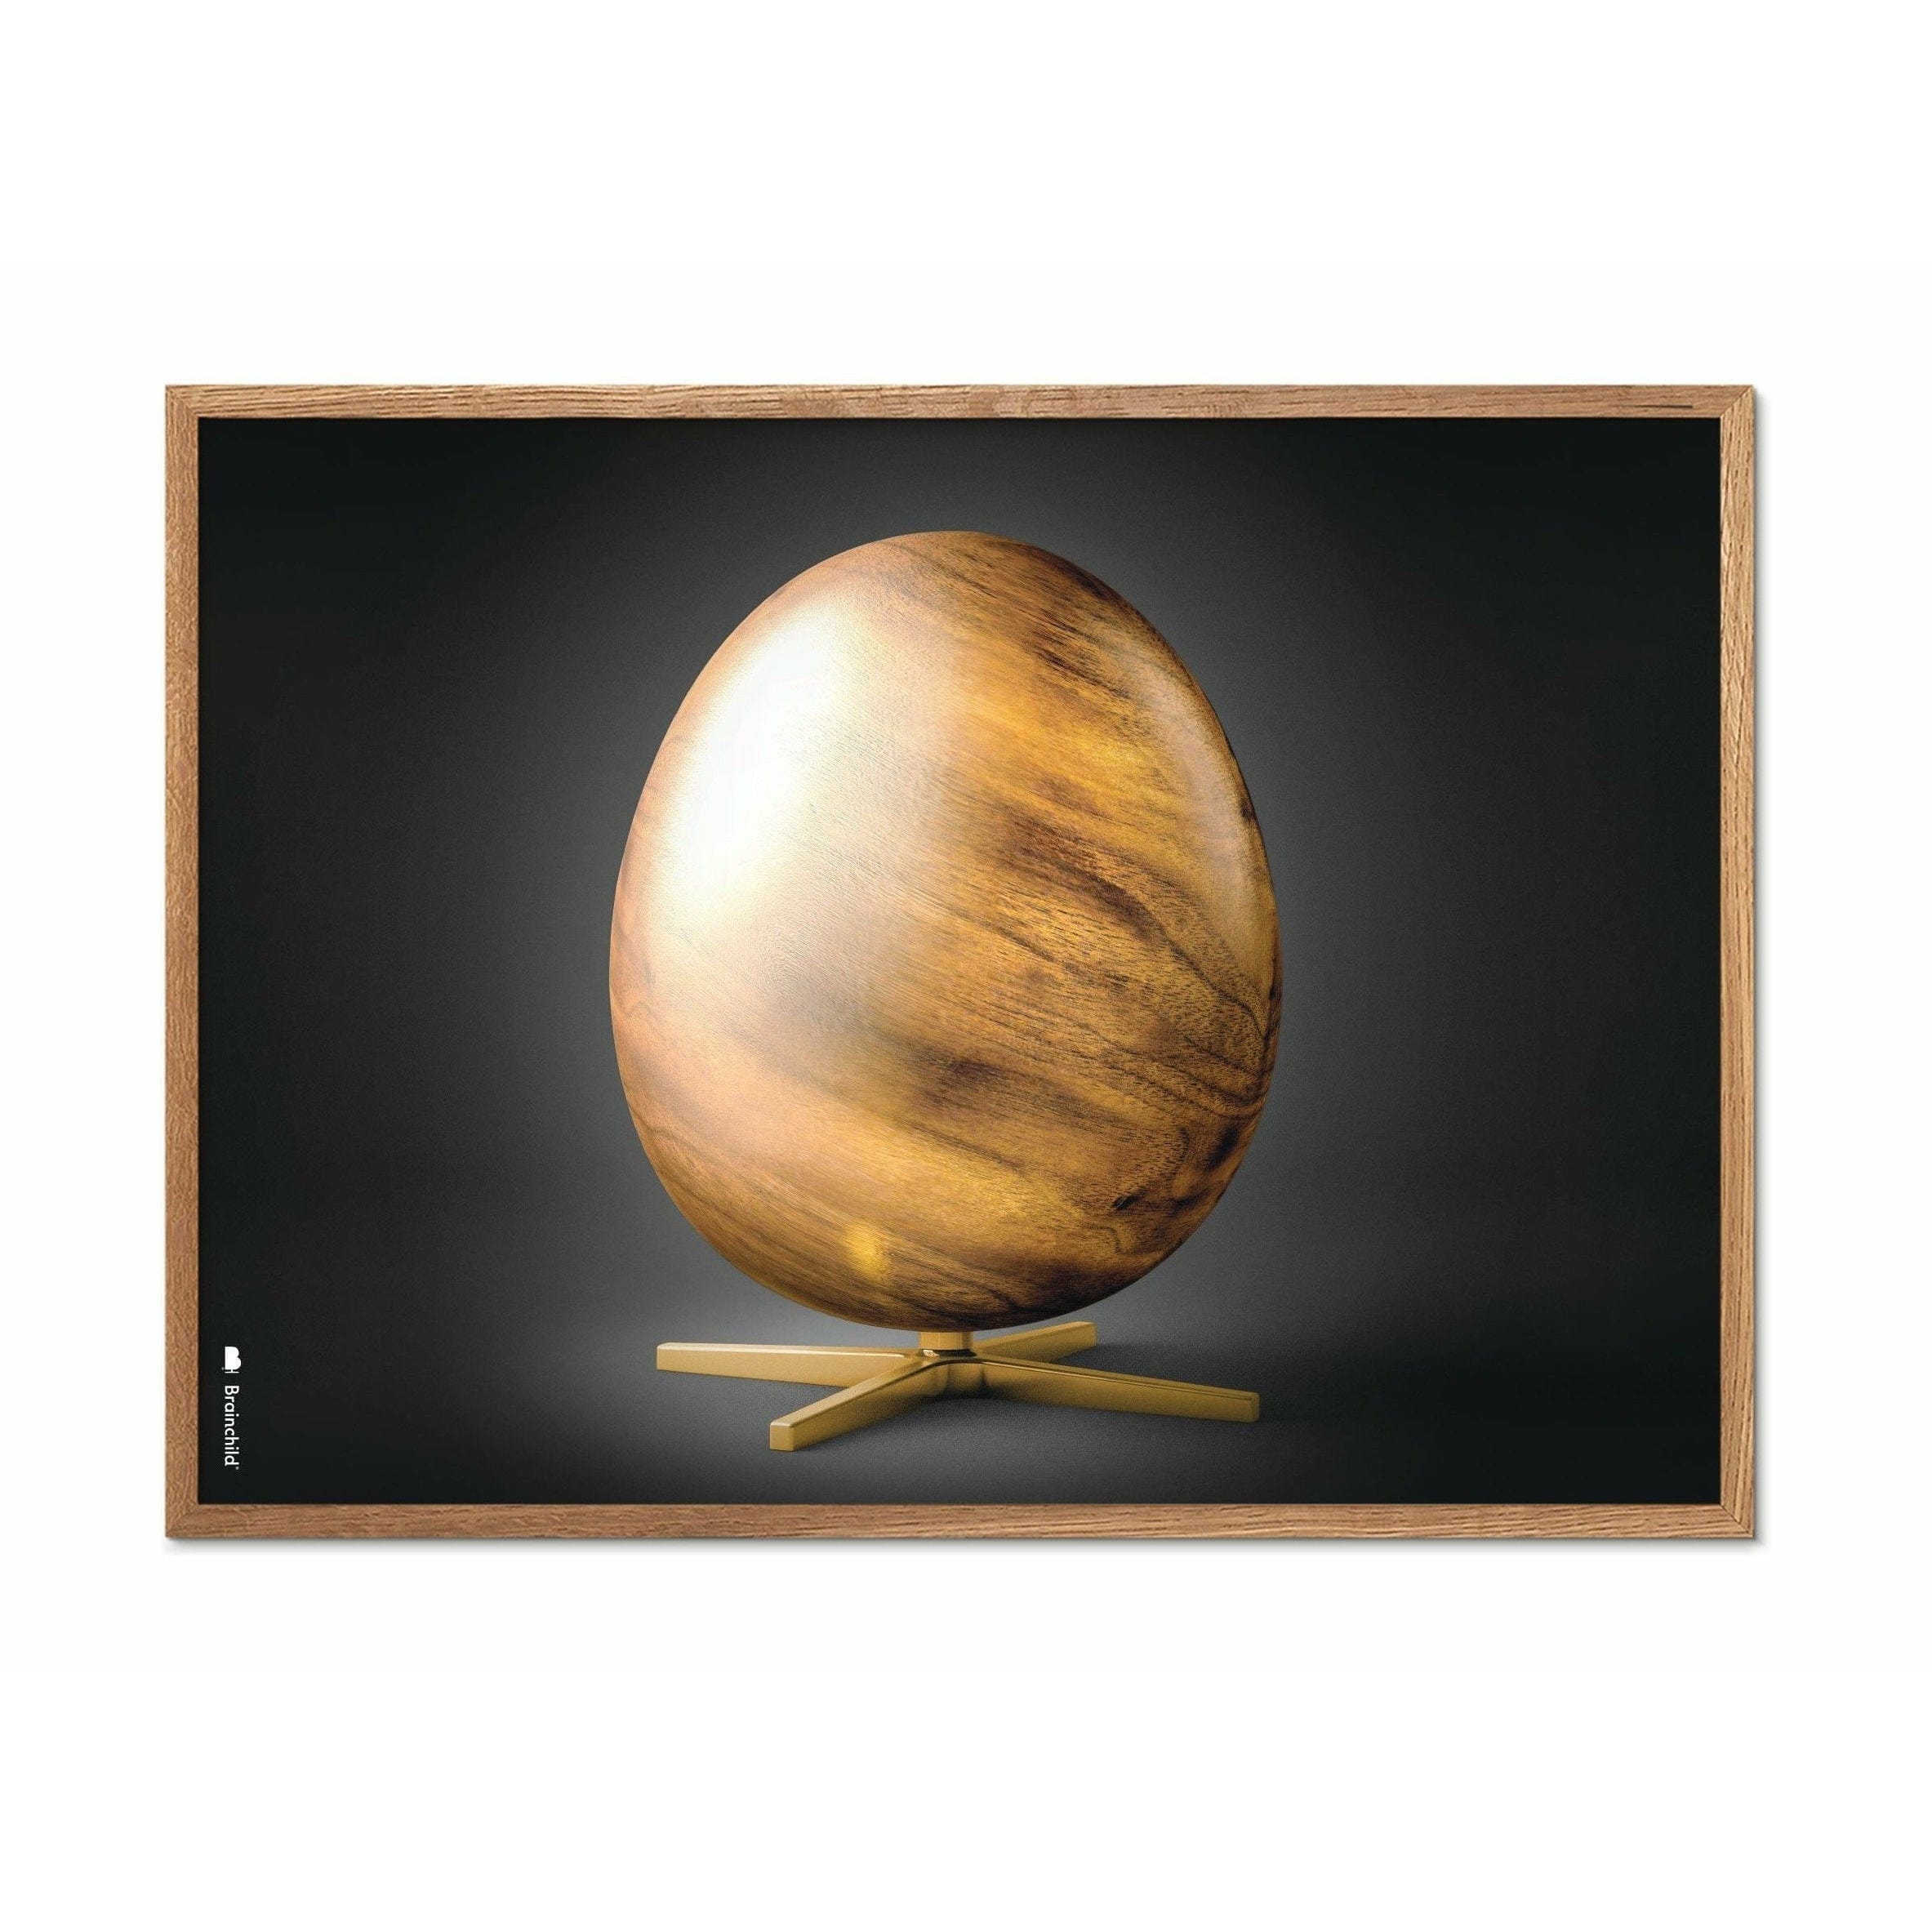 Plakat w formacie jaja pomysłu, rama wykonana z jasnego drewna 70 x 100 cm, czarny